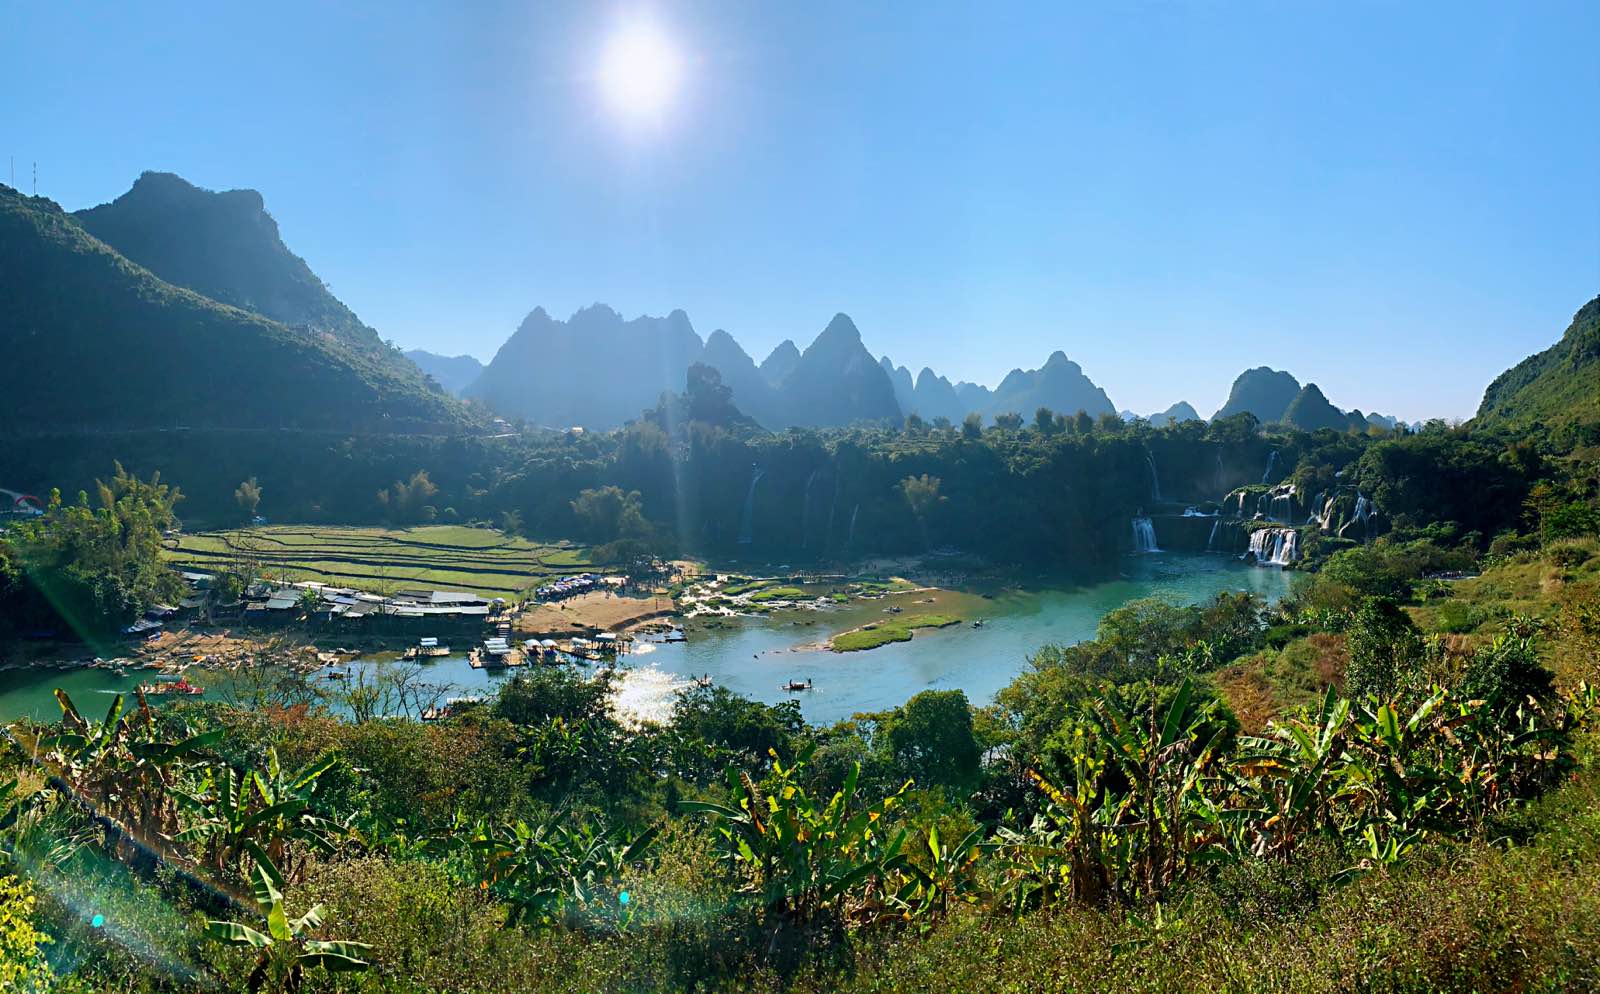 德天瀑布位于广西壮族自治区崇左市大新县硕龙镇德天村，中国与越南边境处的